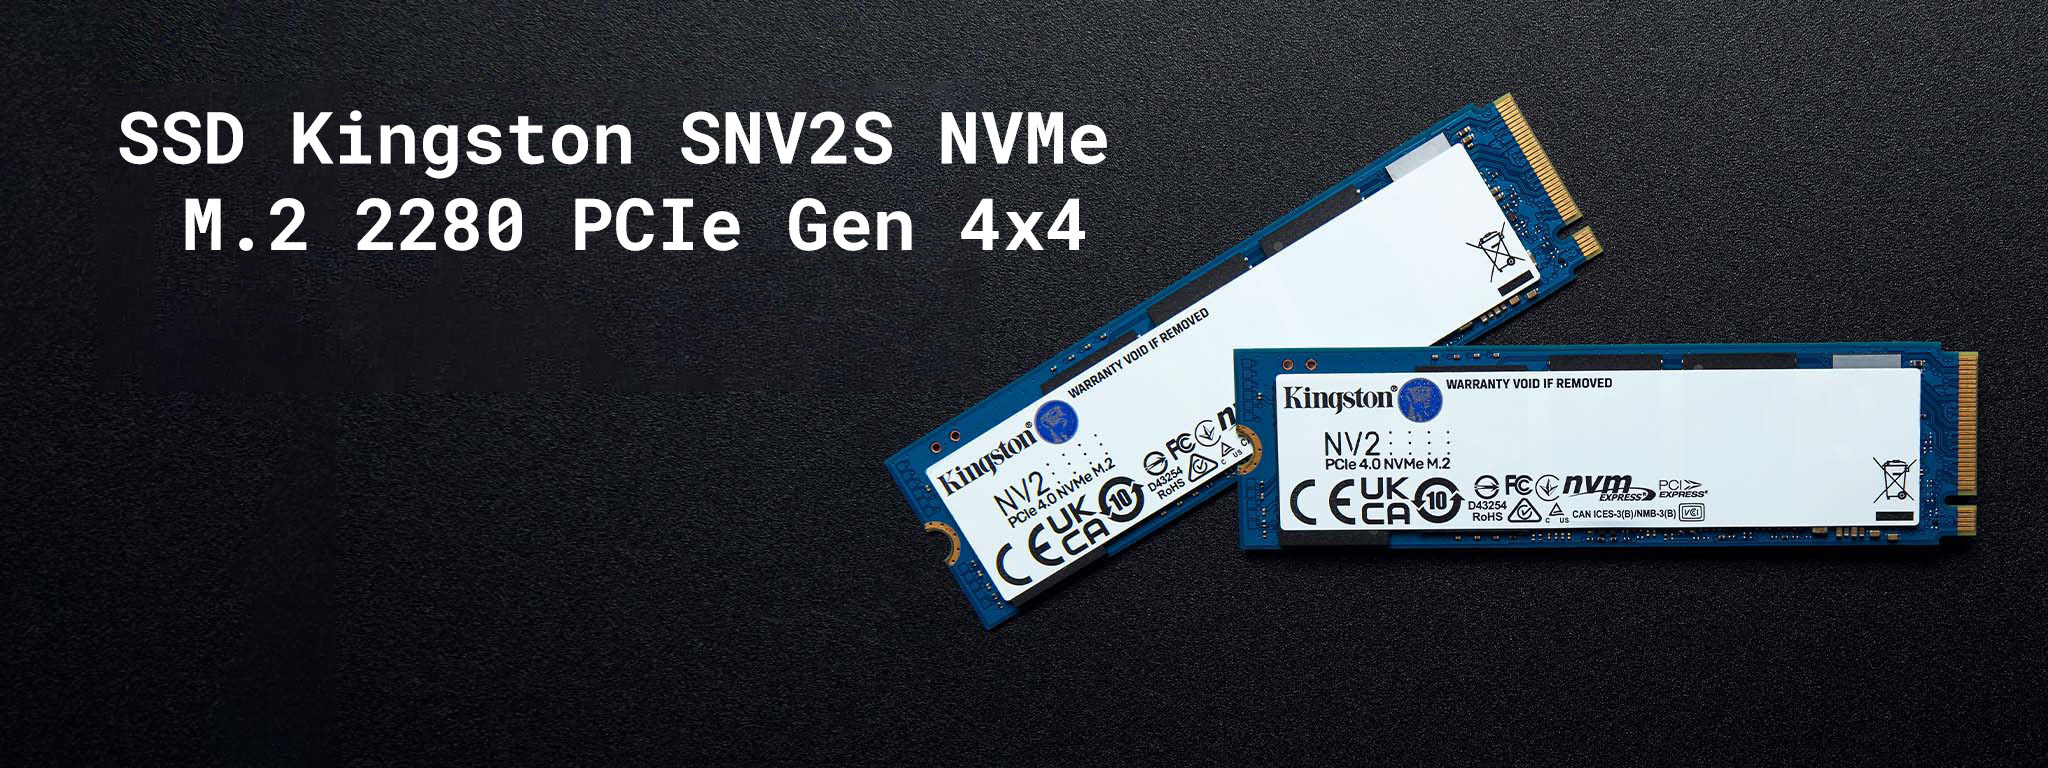 Ổ cứng SSD Kingston SNV2S NVMe M.2 2280 PCIe Gen 4x4